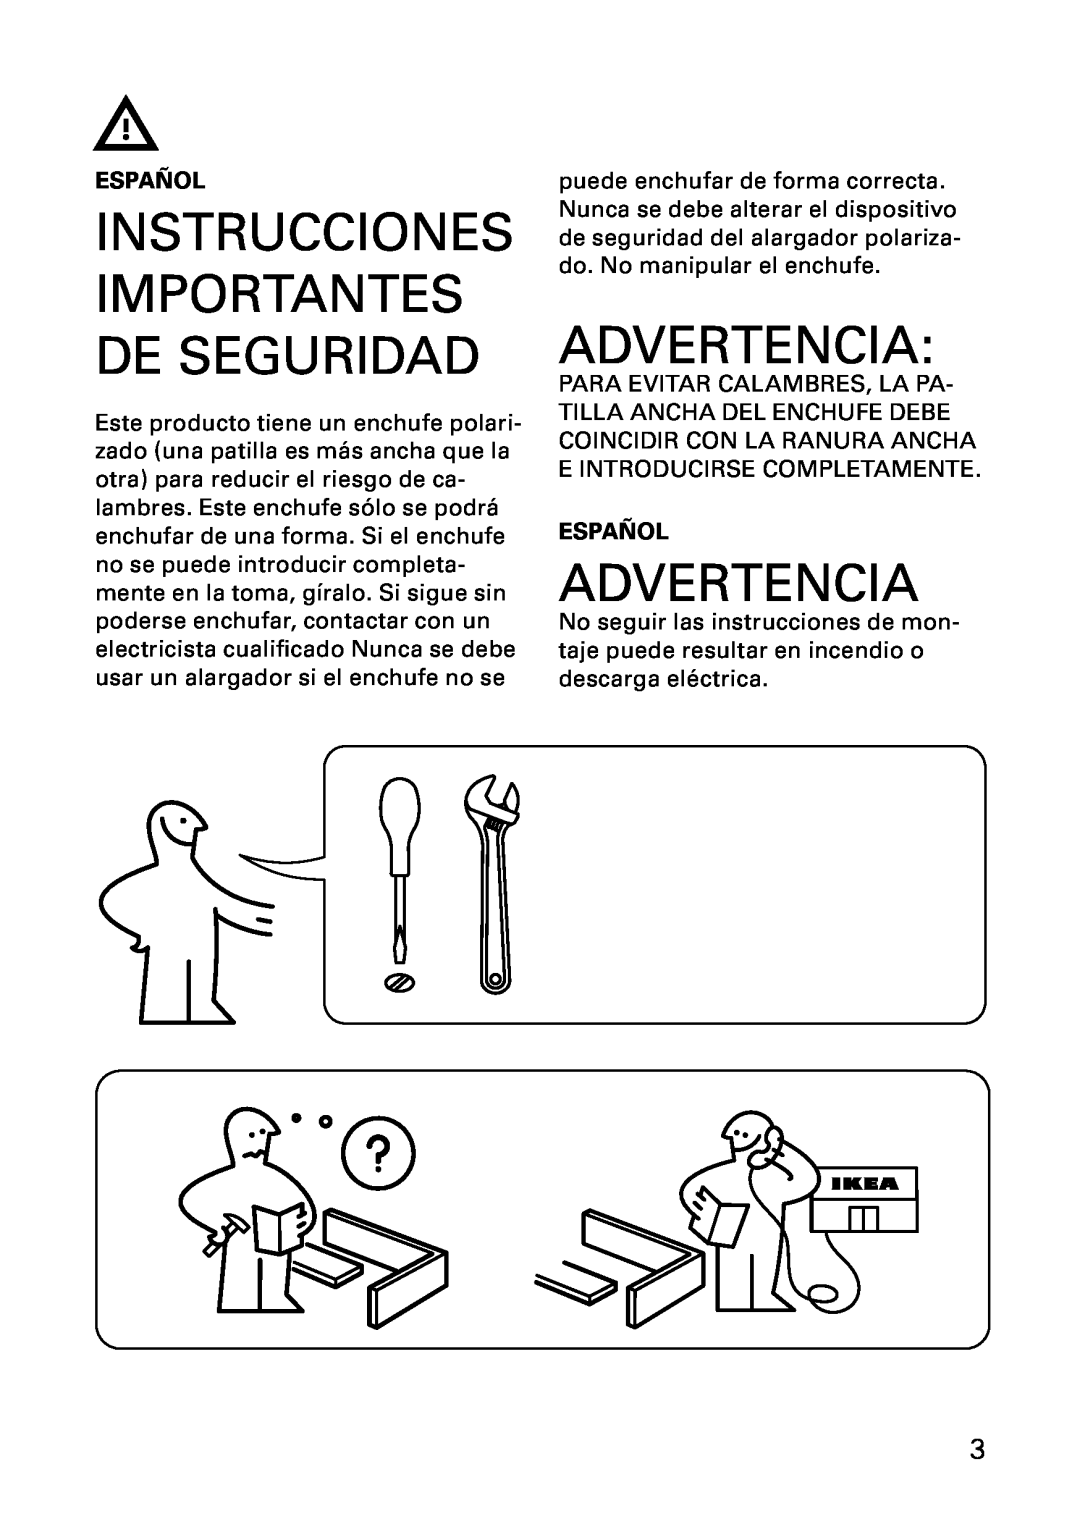 IKEA AA-241604-6 manual Advertencia, Español, Instrucciones Importantes De Seguridad 